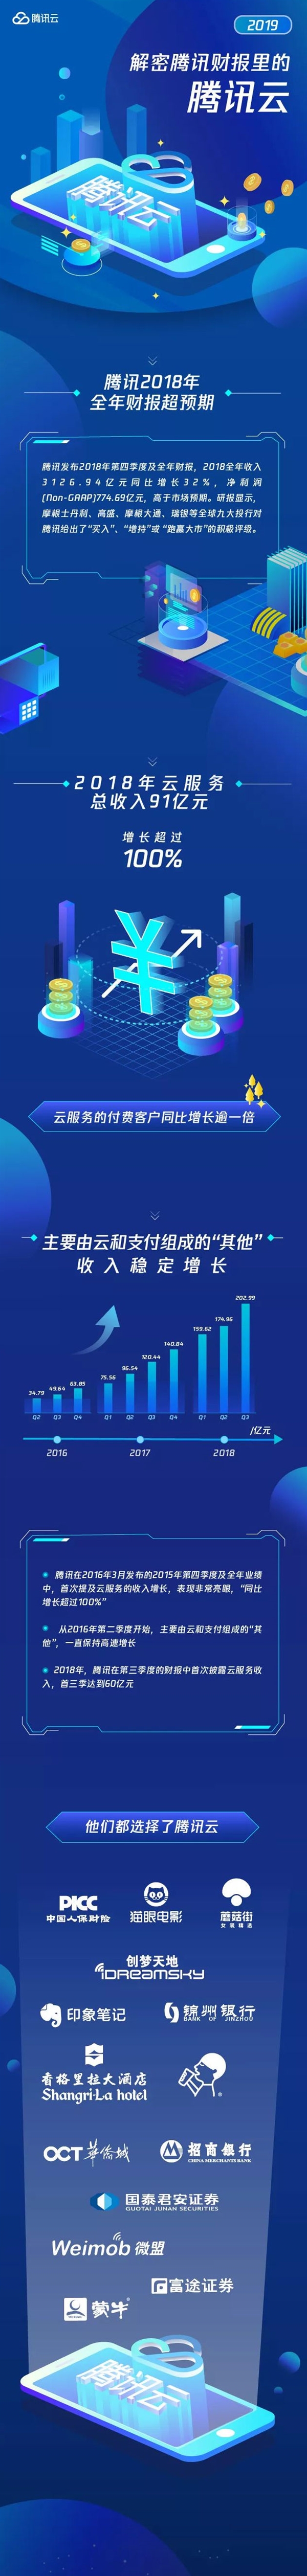 腾讯云2018全年营收91亿增长超100%：超过一半游戏公司使用